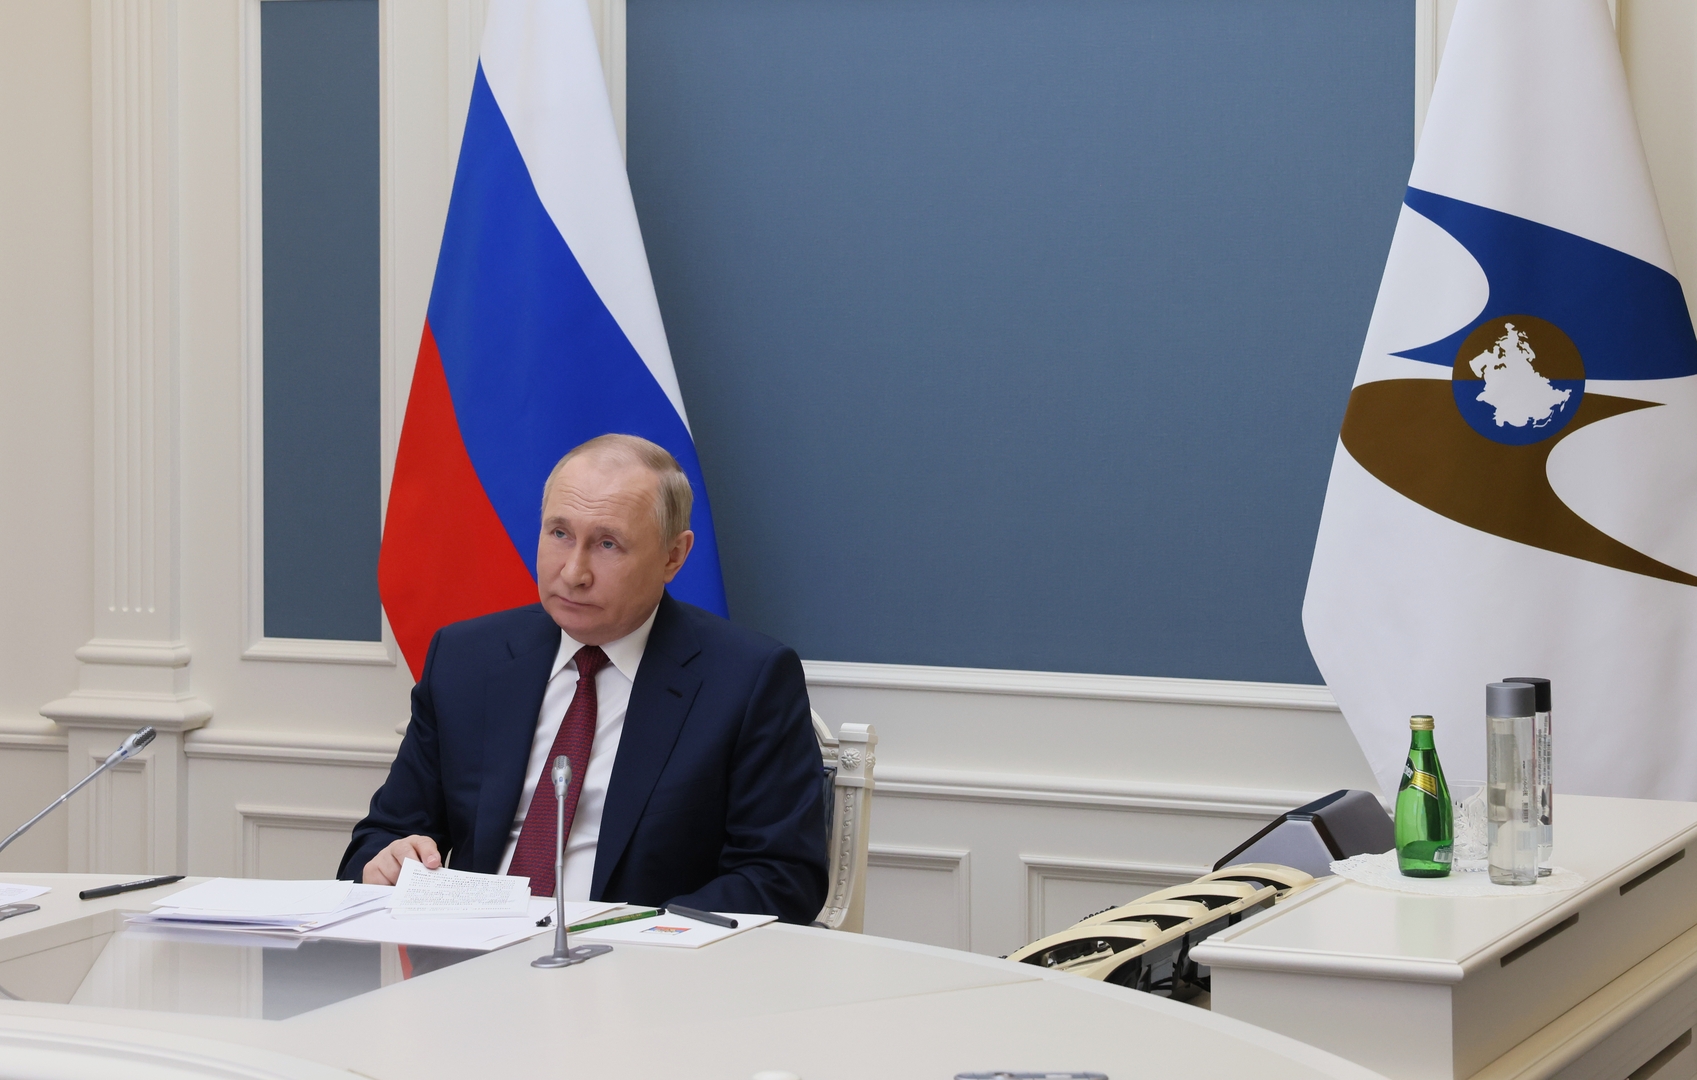 بوتين محذرا من مصادرة أصول روسية: سرقة ممتلكات الآخرين لا تؤدي أبدا إلى الخير